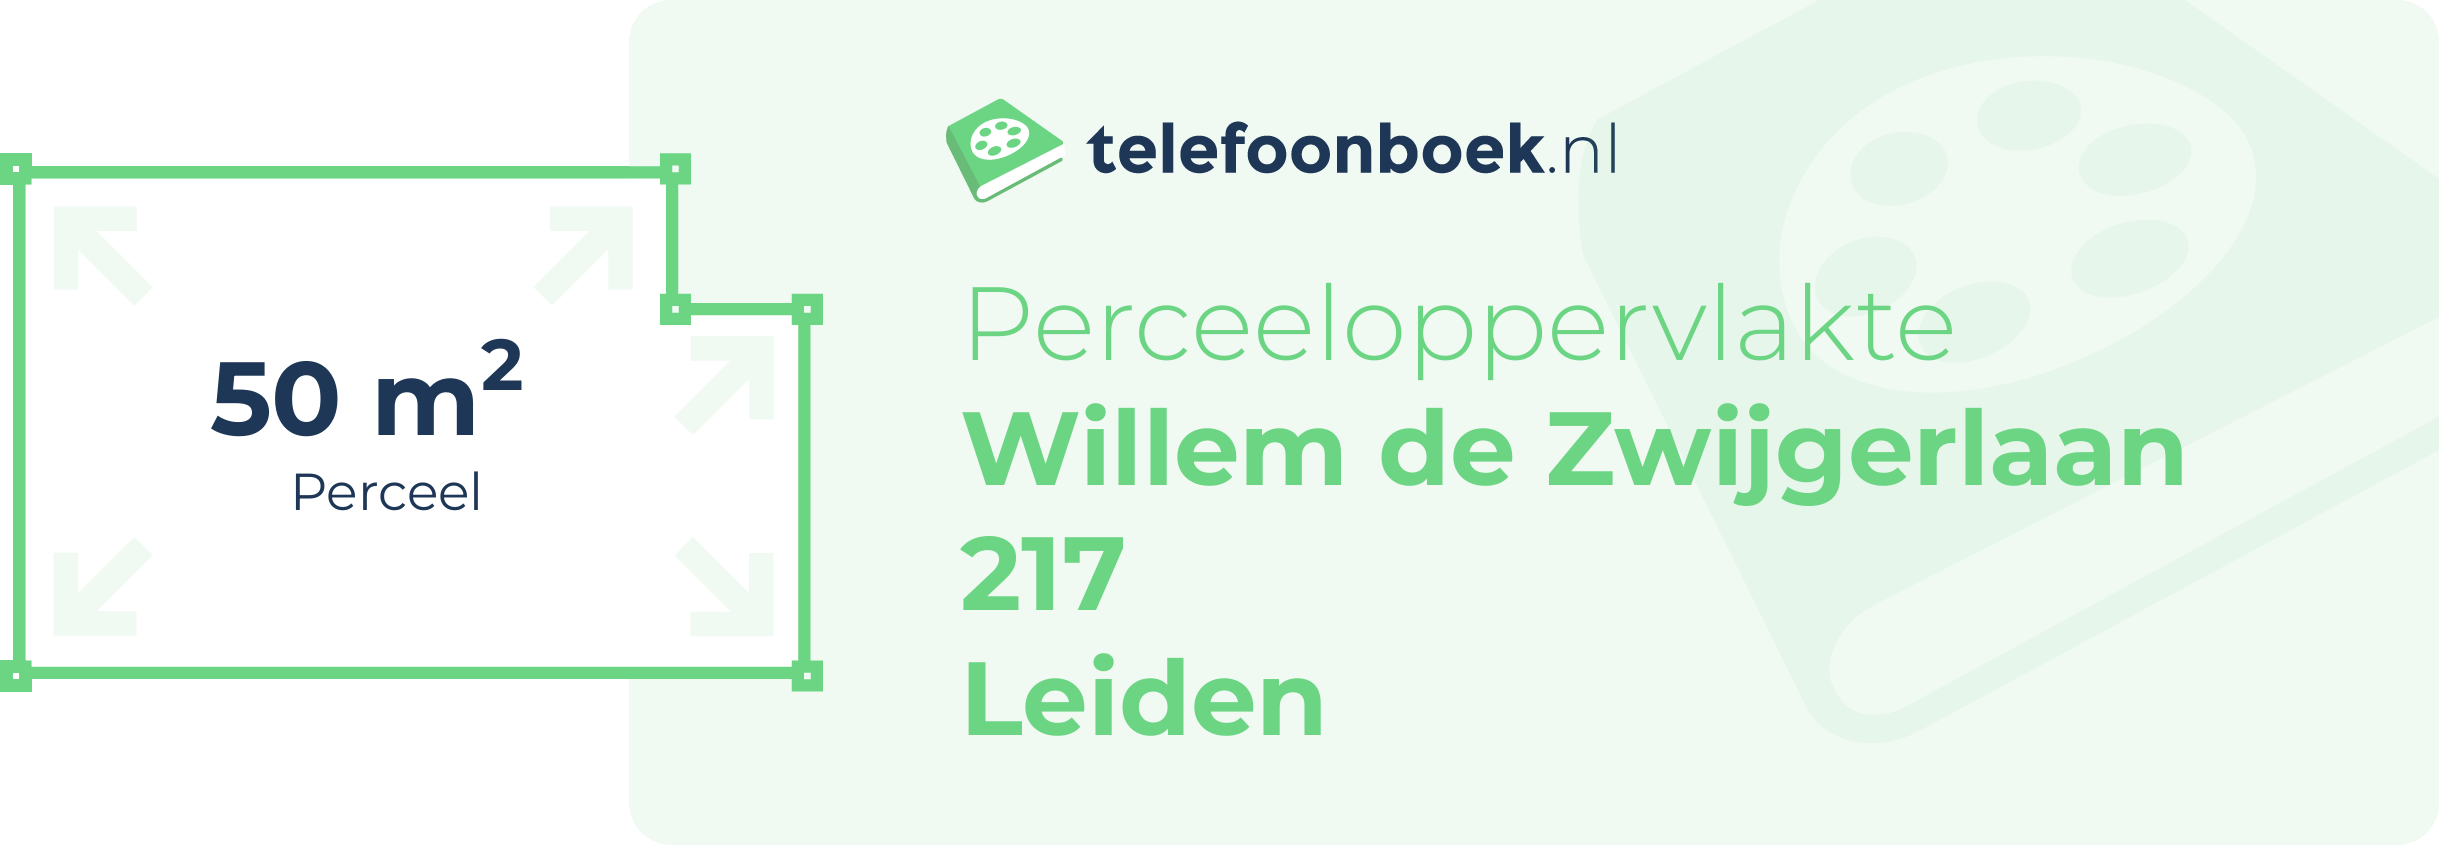 Perceeloppervlakte Willem De Zwijgerlaan 217 Leiden